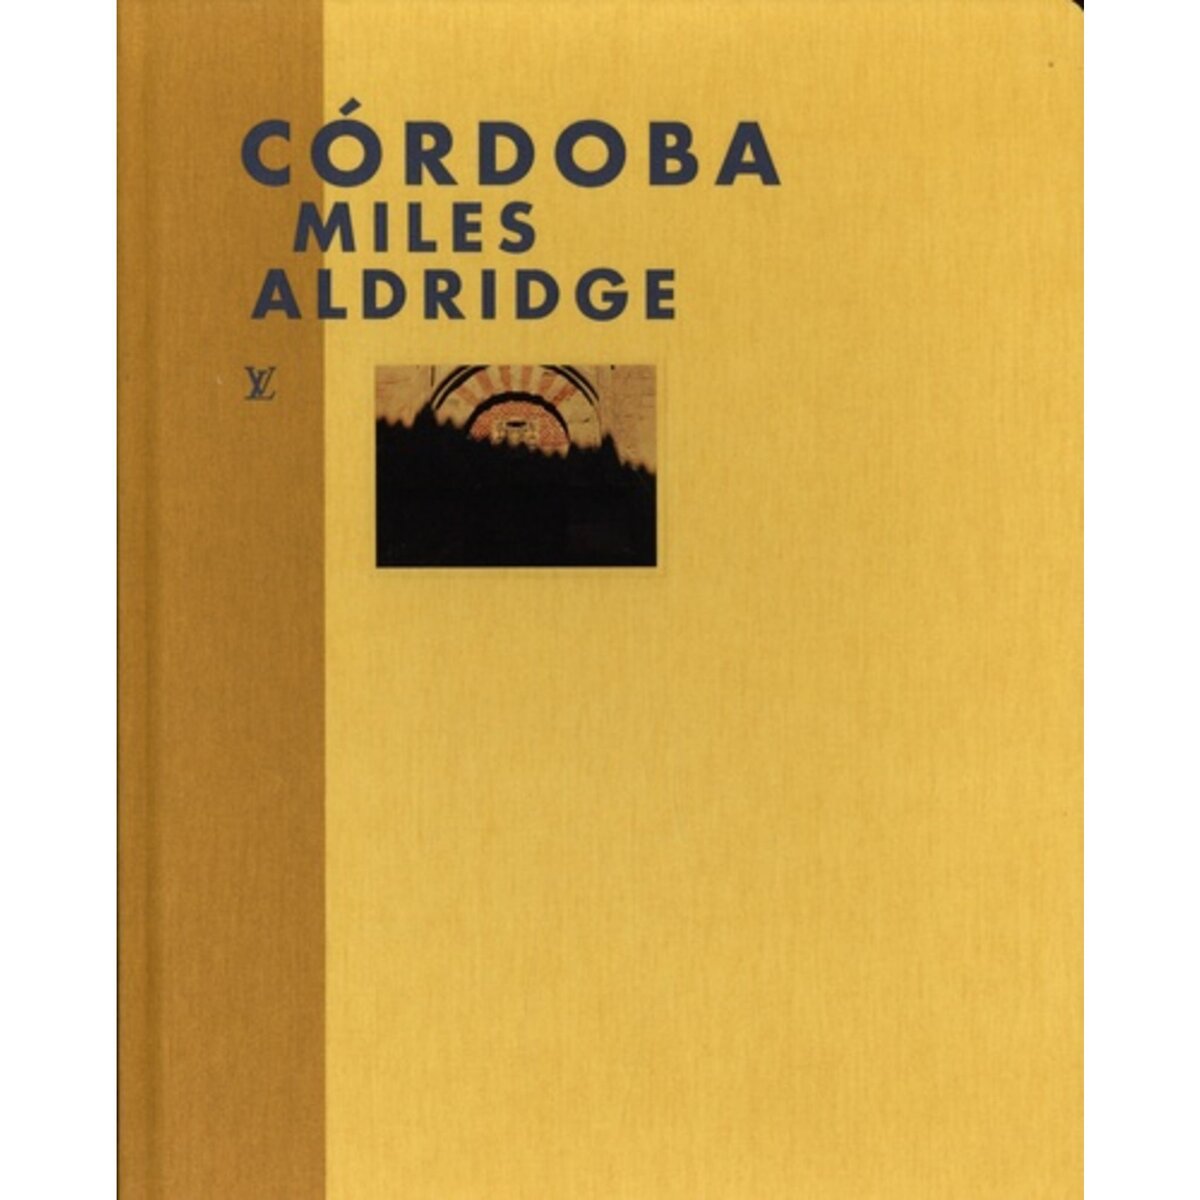  CORDOBA. EDITION BILINGUE FRANCAIS-ANGLAIS, Aldridge Miles